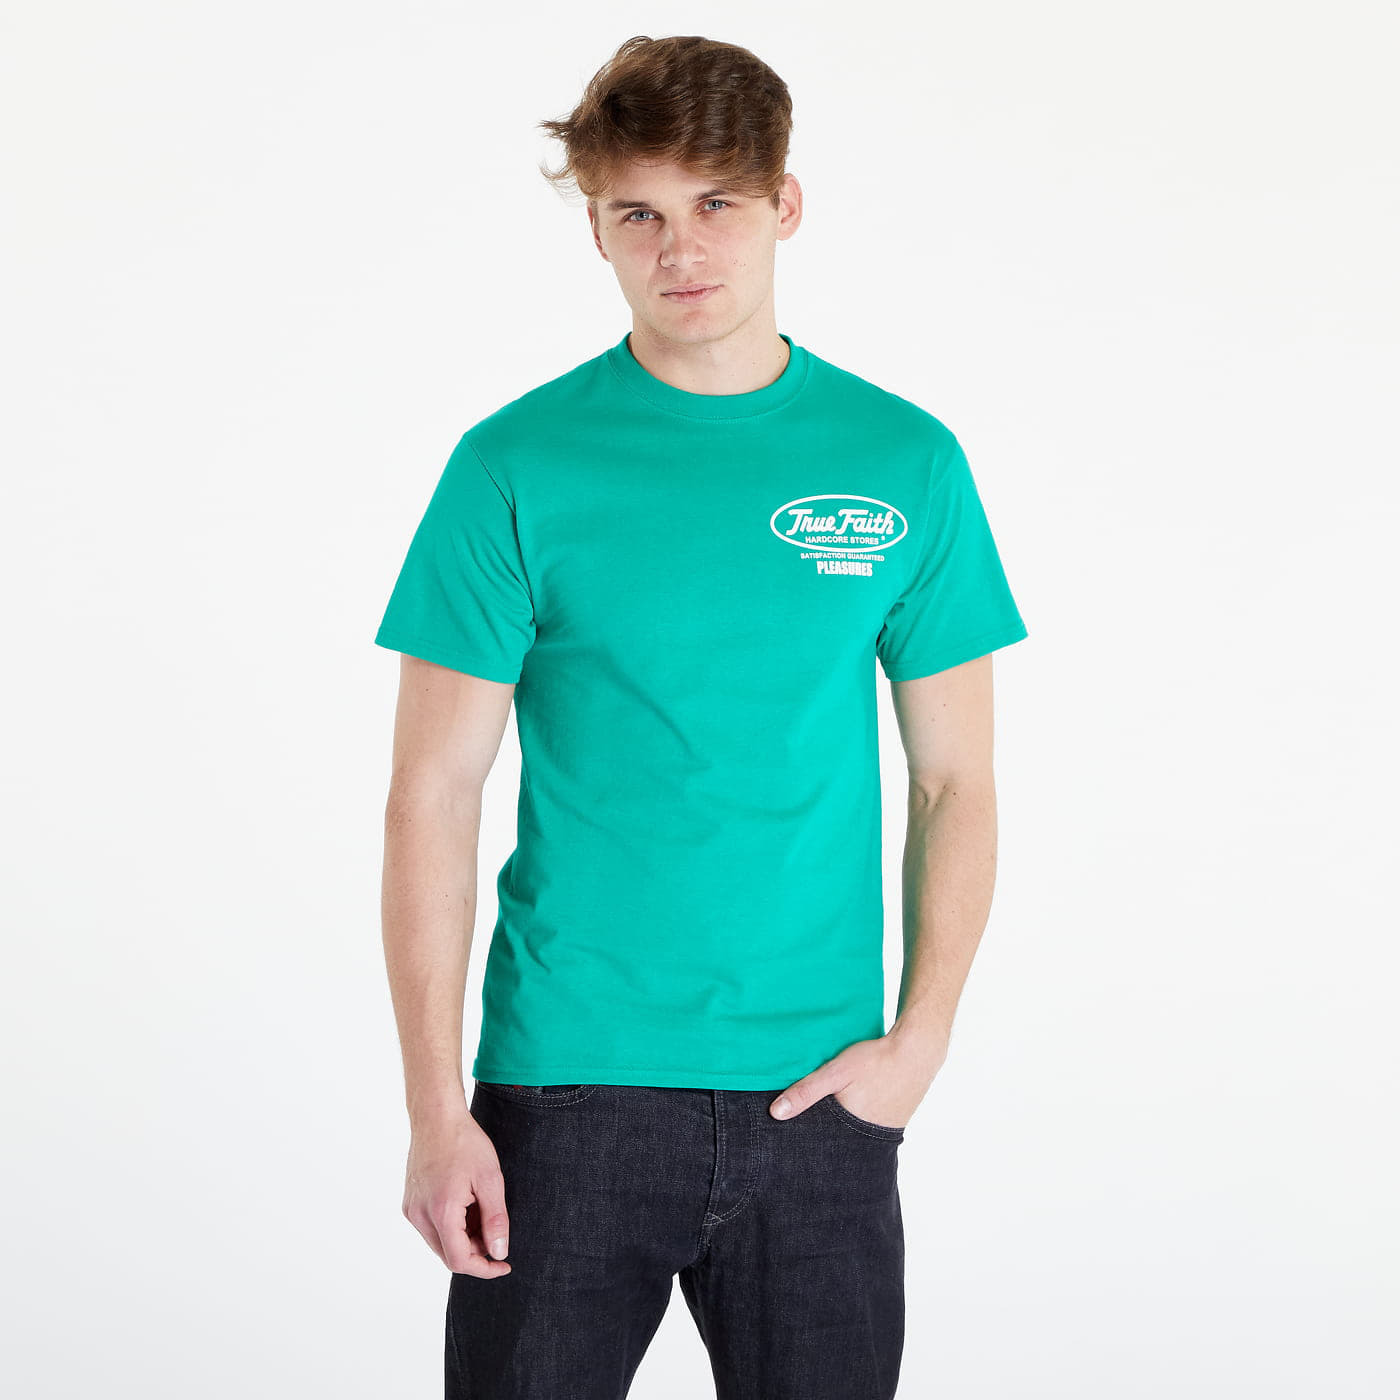 PLEASURES - faith t-shirt green